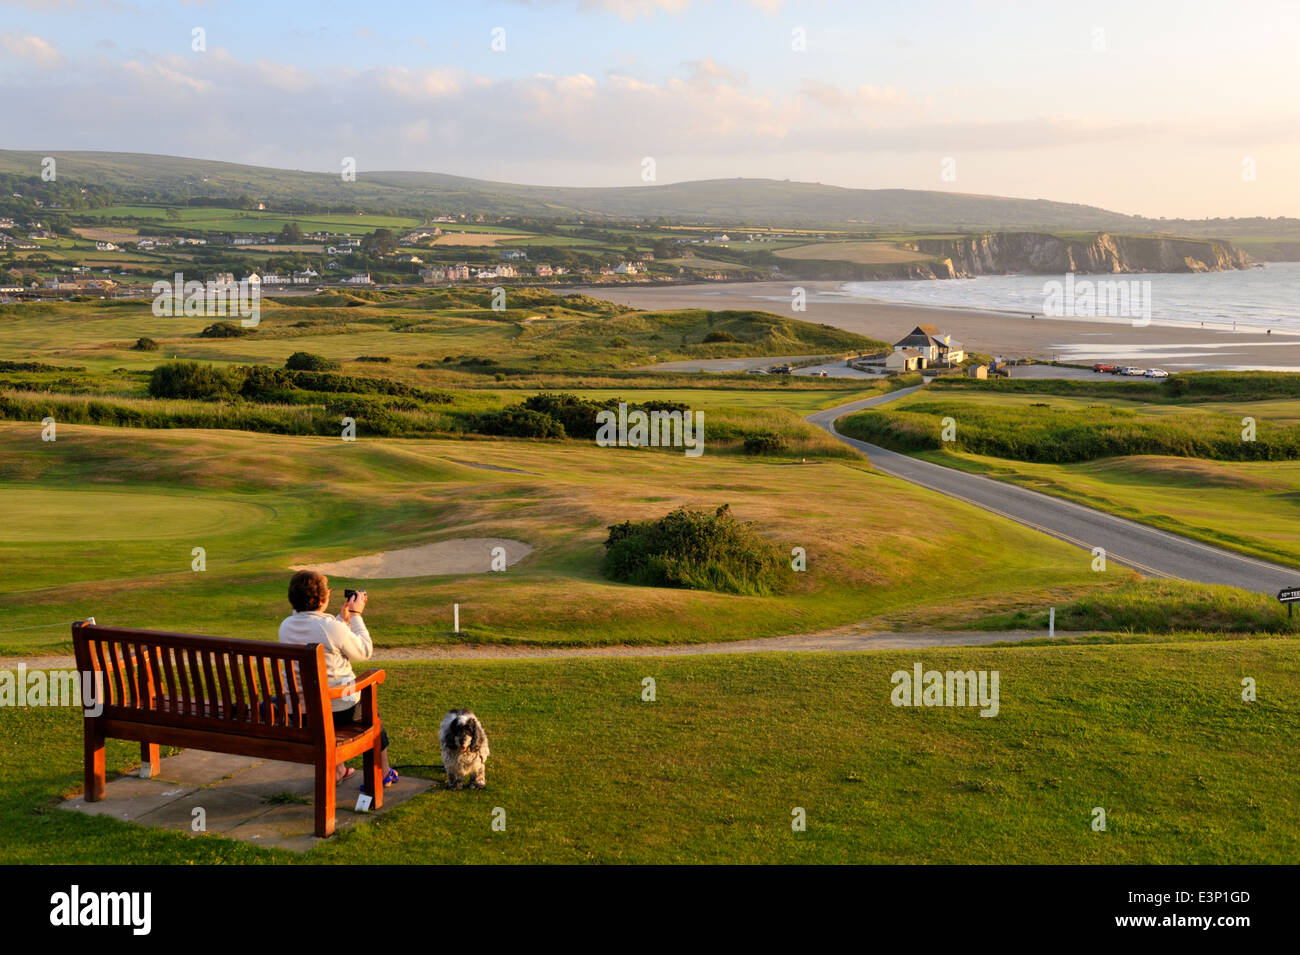 Newport Links Golf Club, femme sur banc avec vue sur plage de Newport, Pembrokeshire, Pays de Galles, Royaume-Uni Banque D'Images